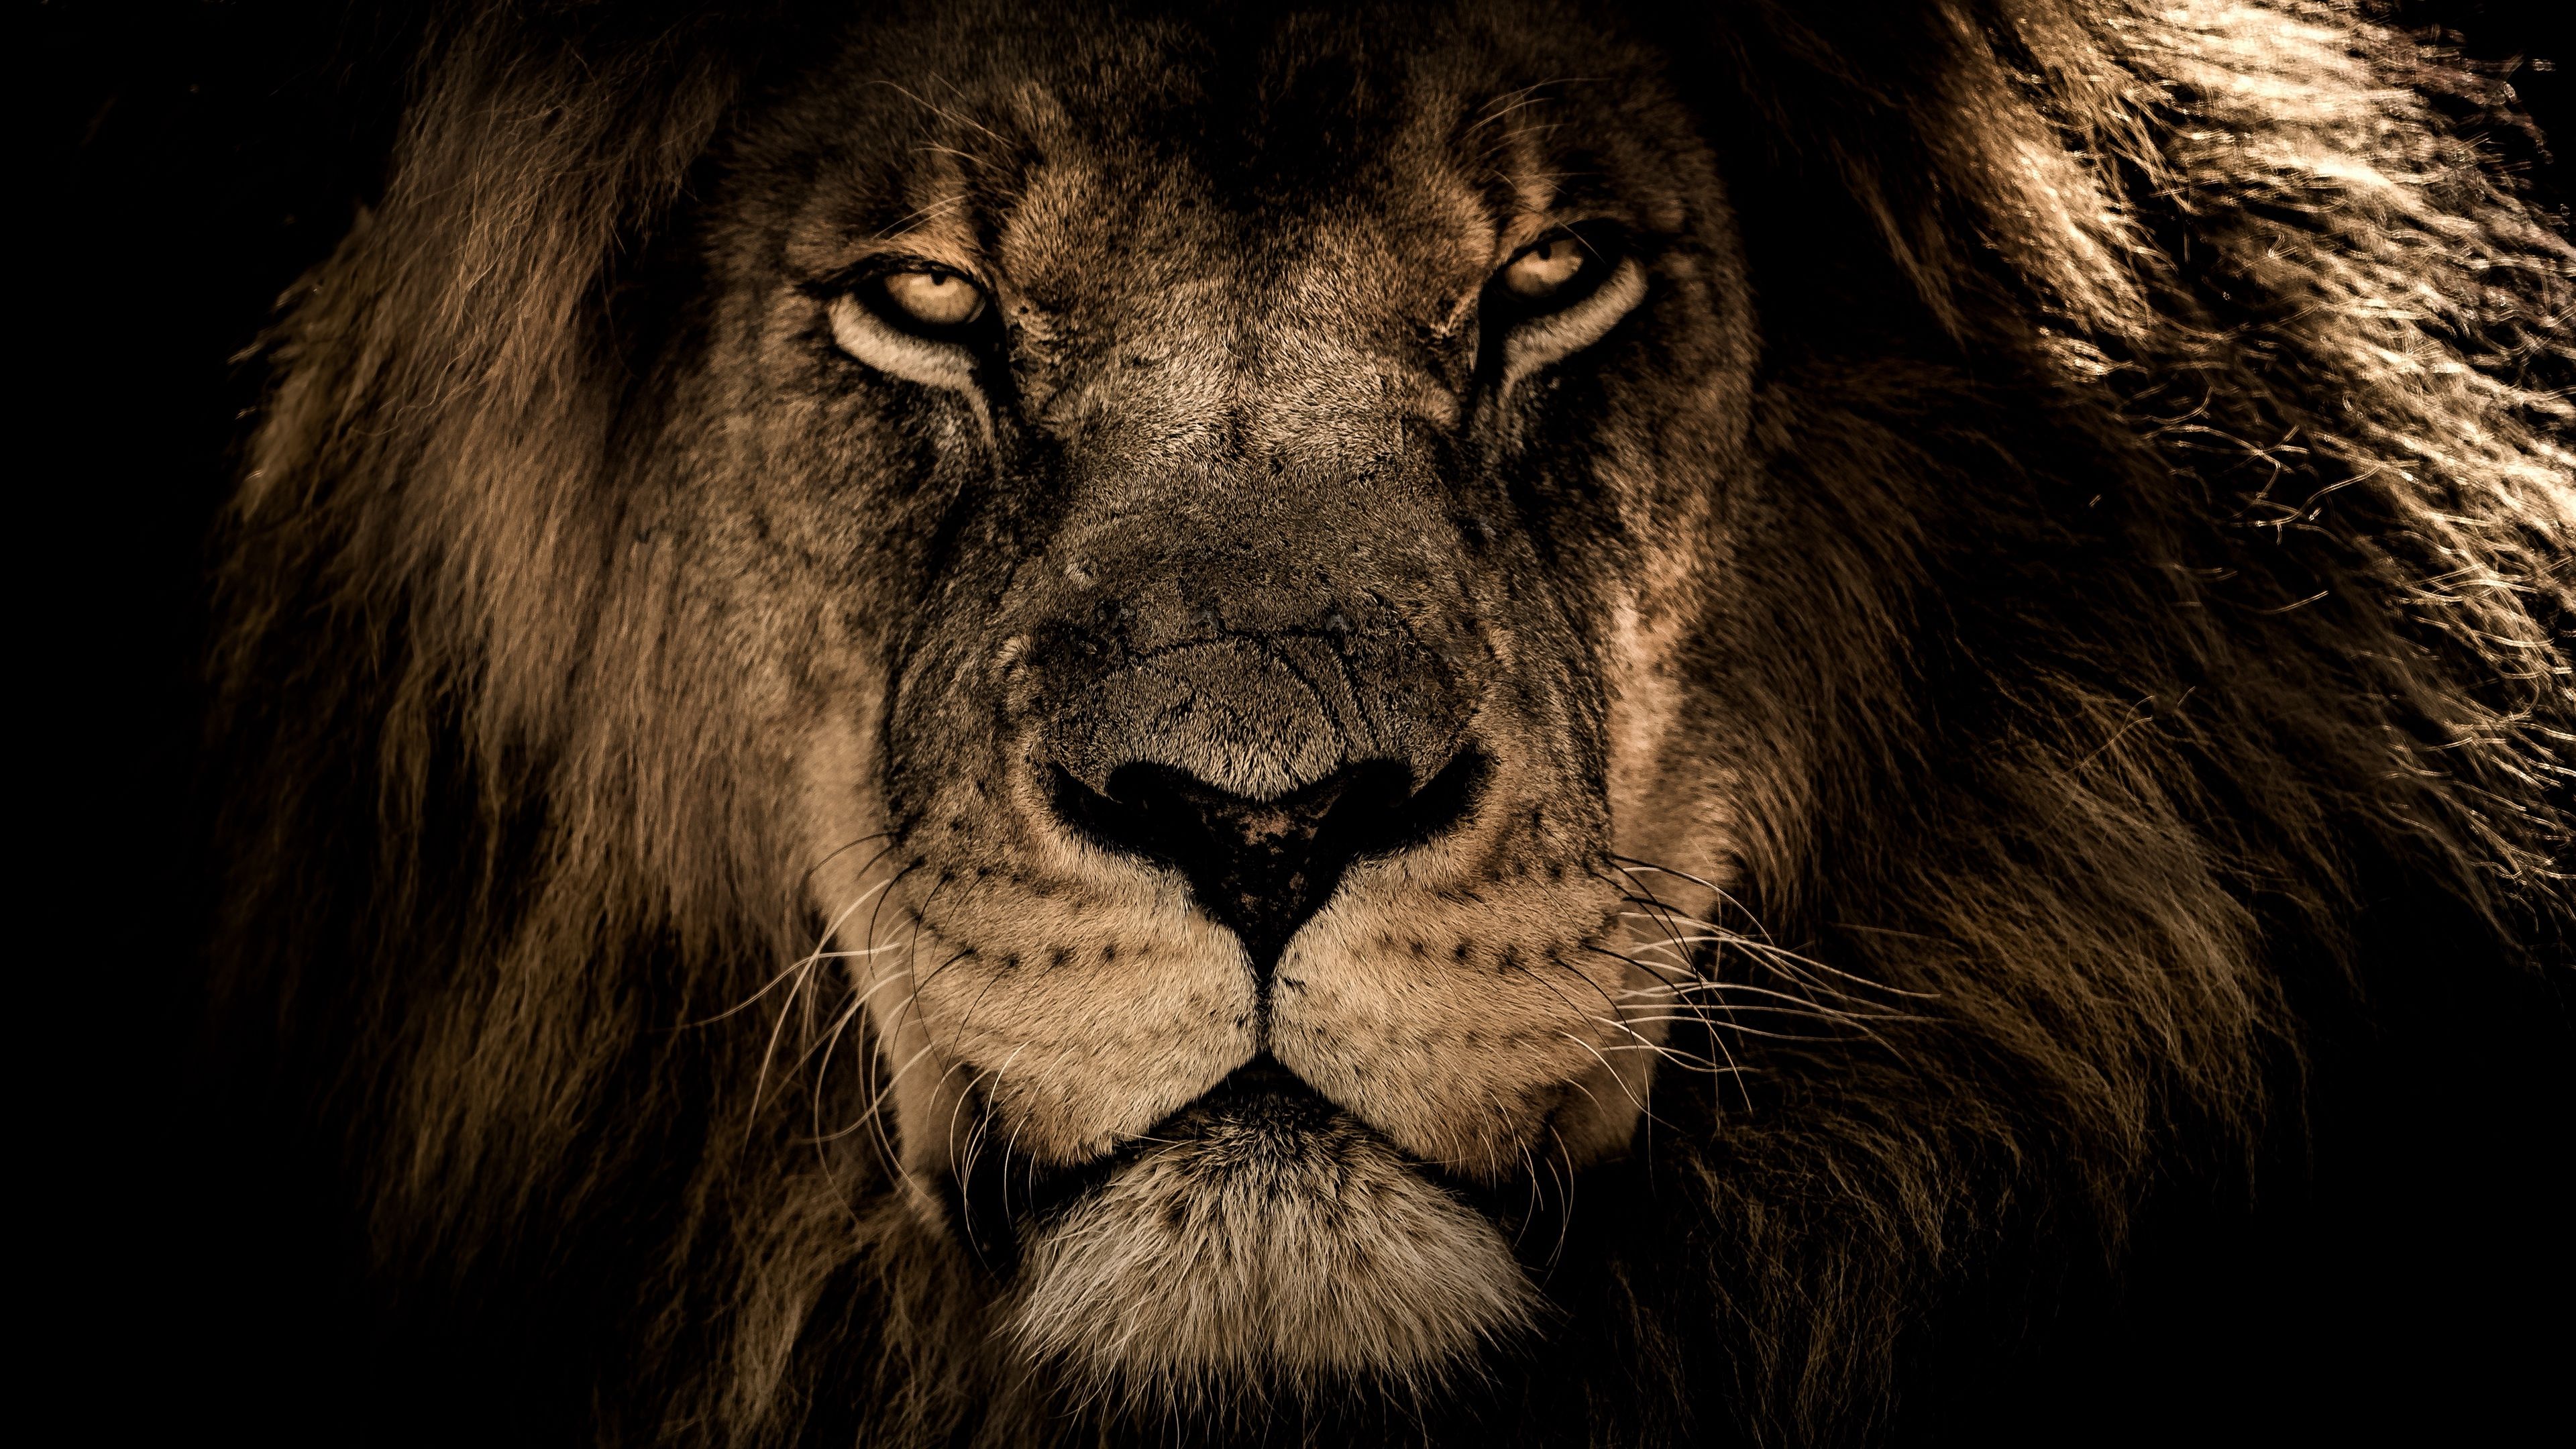 پر ابهت ترین عکس گرفته شده از شیر جنگل برای پروفایل 